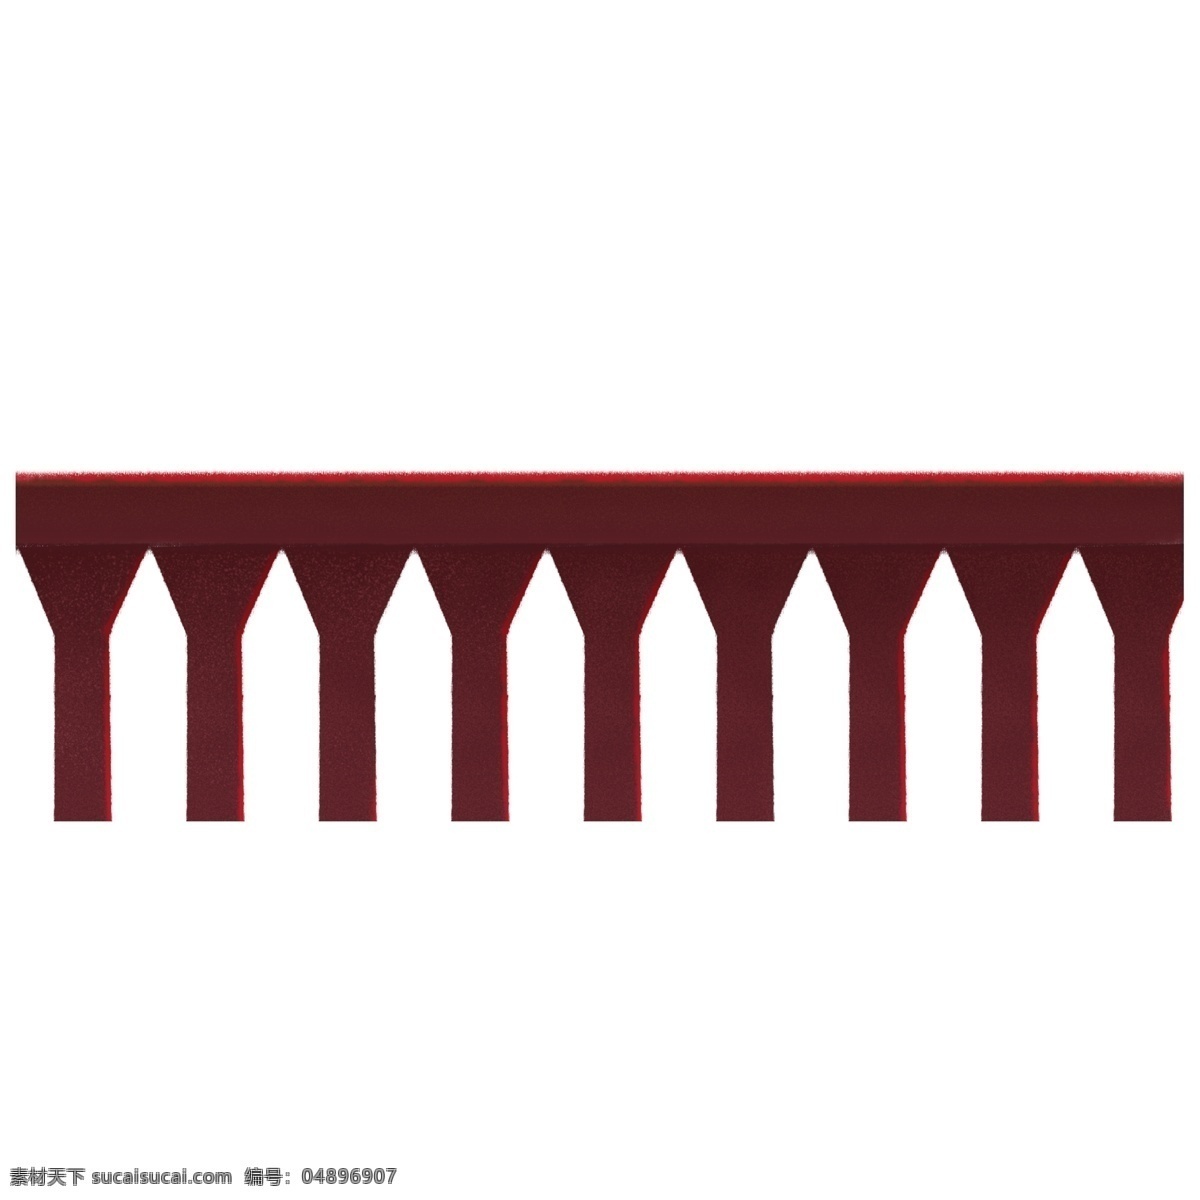 一个 漂亮 护栏 免 抠 图 栏杆 装修 花纹 美丽 漂亮的护栏 免抠图 漂亮护栏 红色栏杆 装饰物